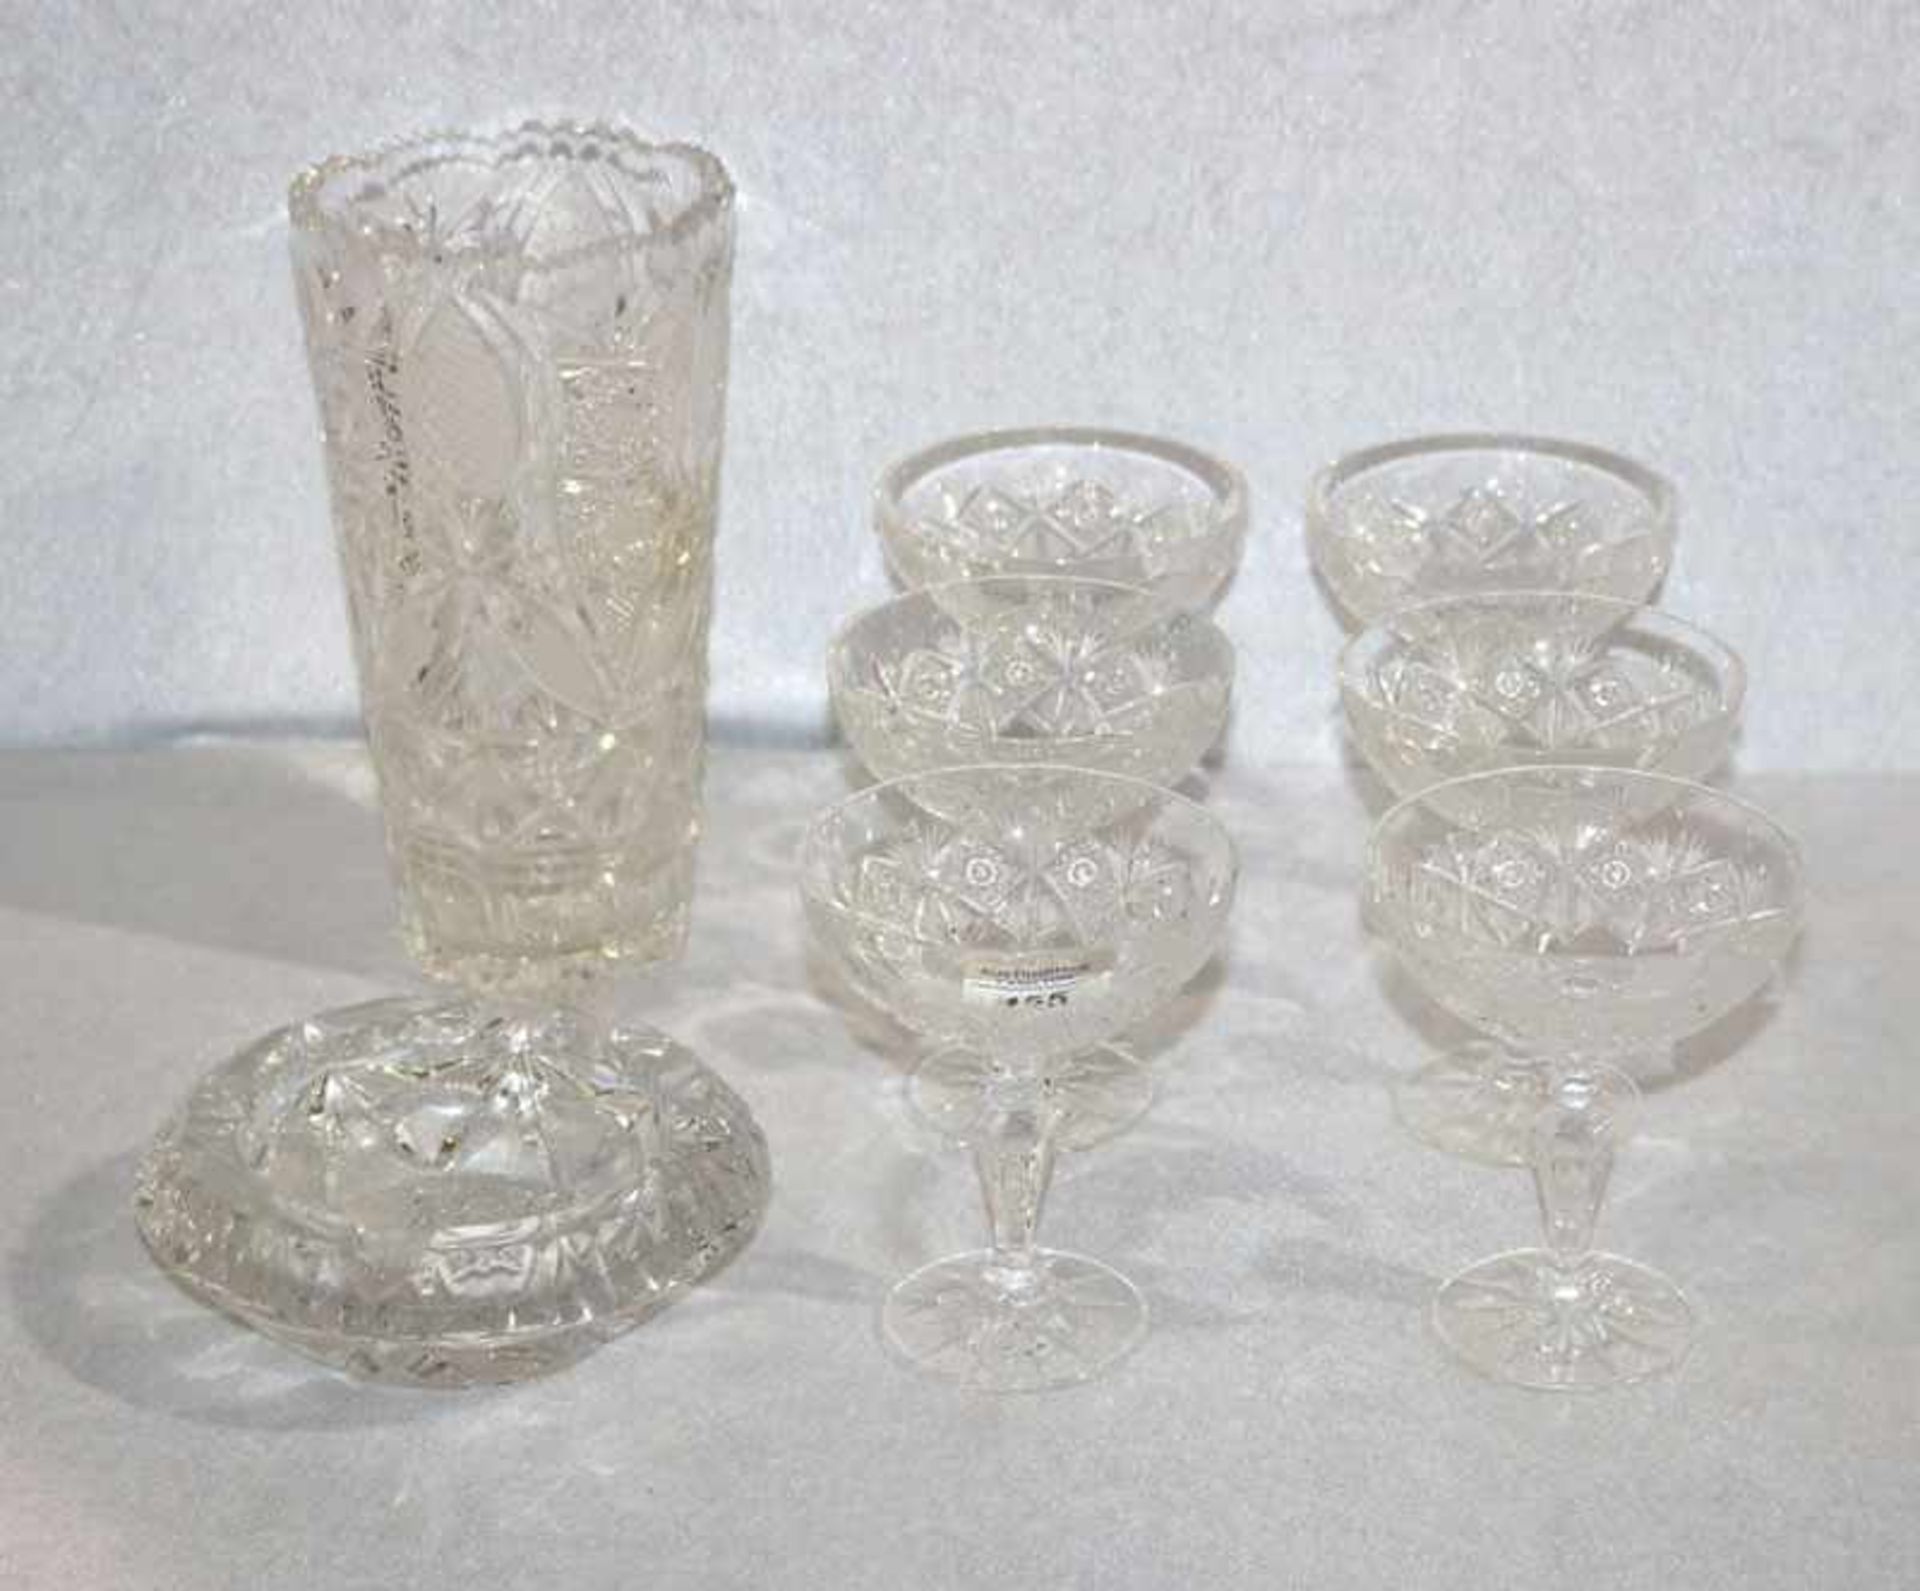 Kristallglas-Konvolut: Vase, H 22 cm, D 12 cm, 6 Sektschalen, H 13 cm, und Aschenbecher, H 5 cm, D